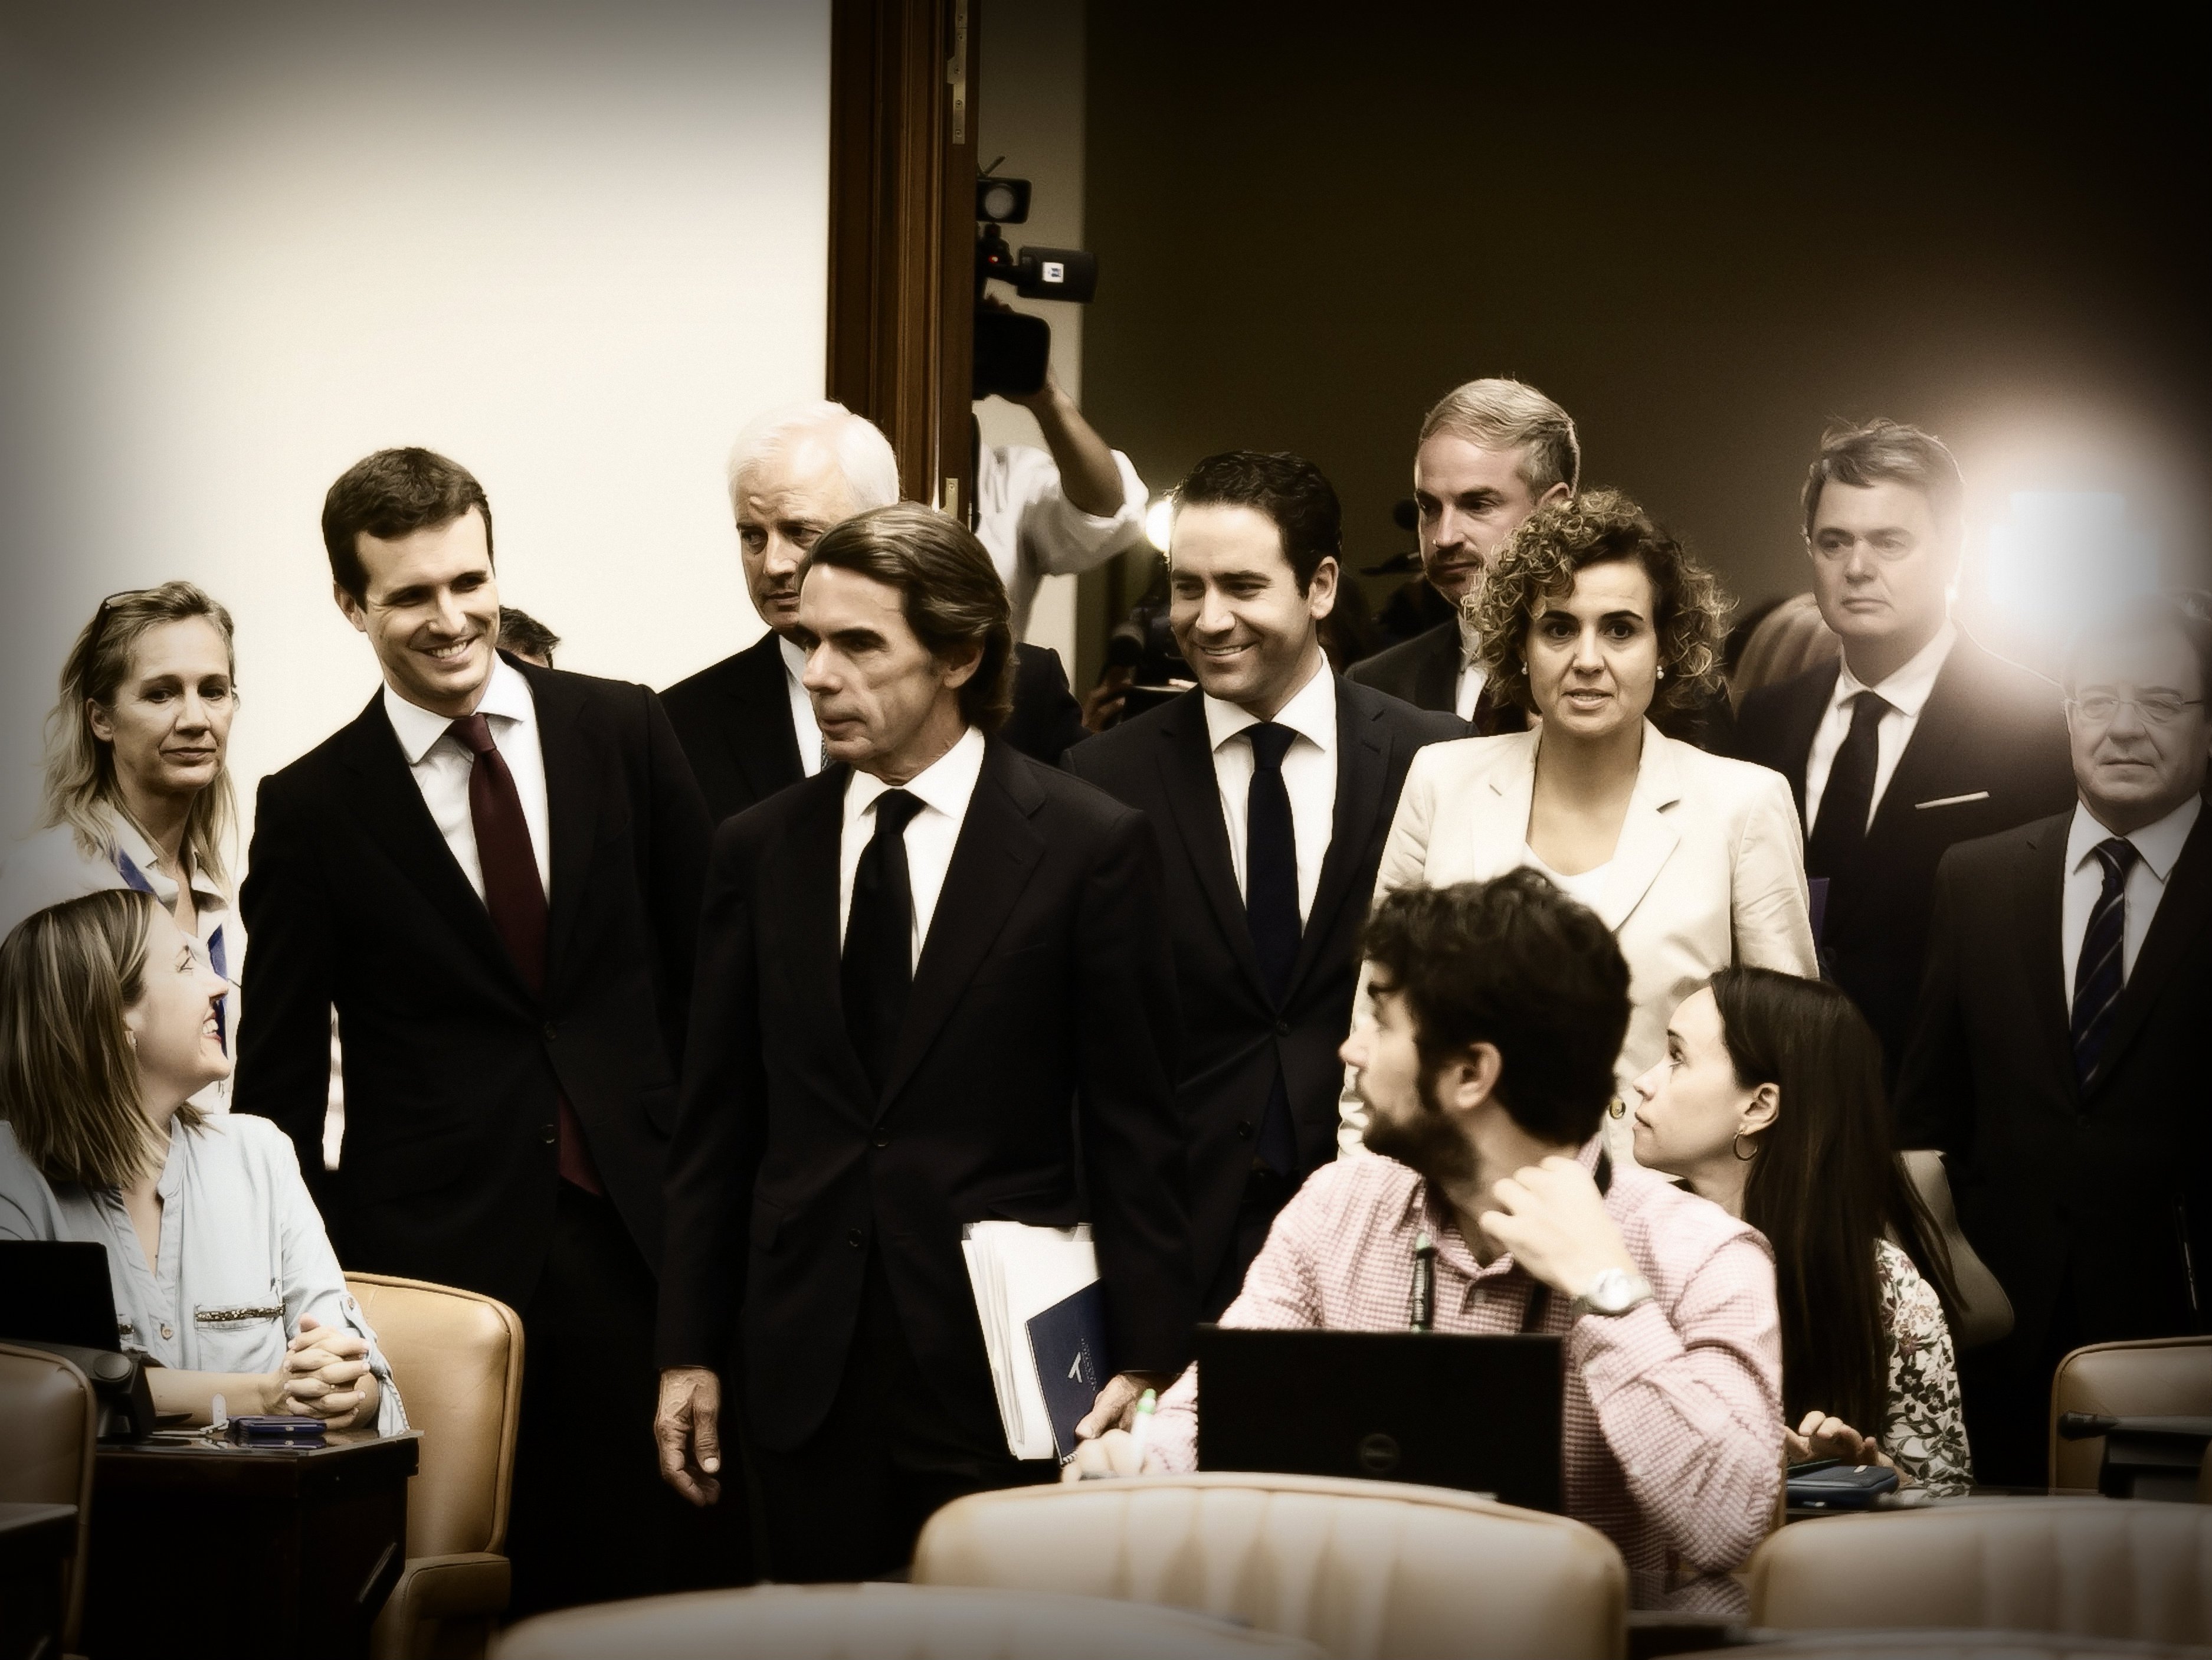 La unción de Casado por Aznar en la prensa nacionalista (española)